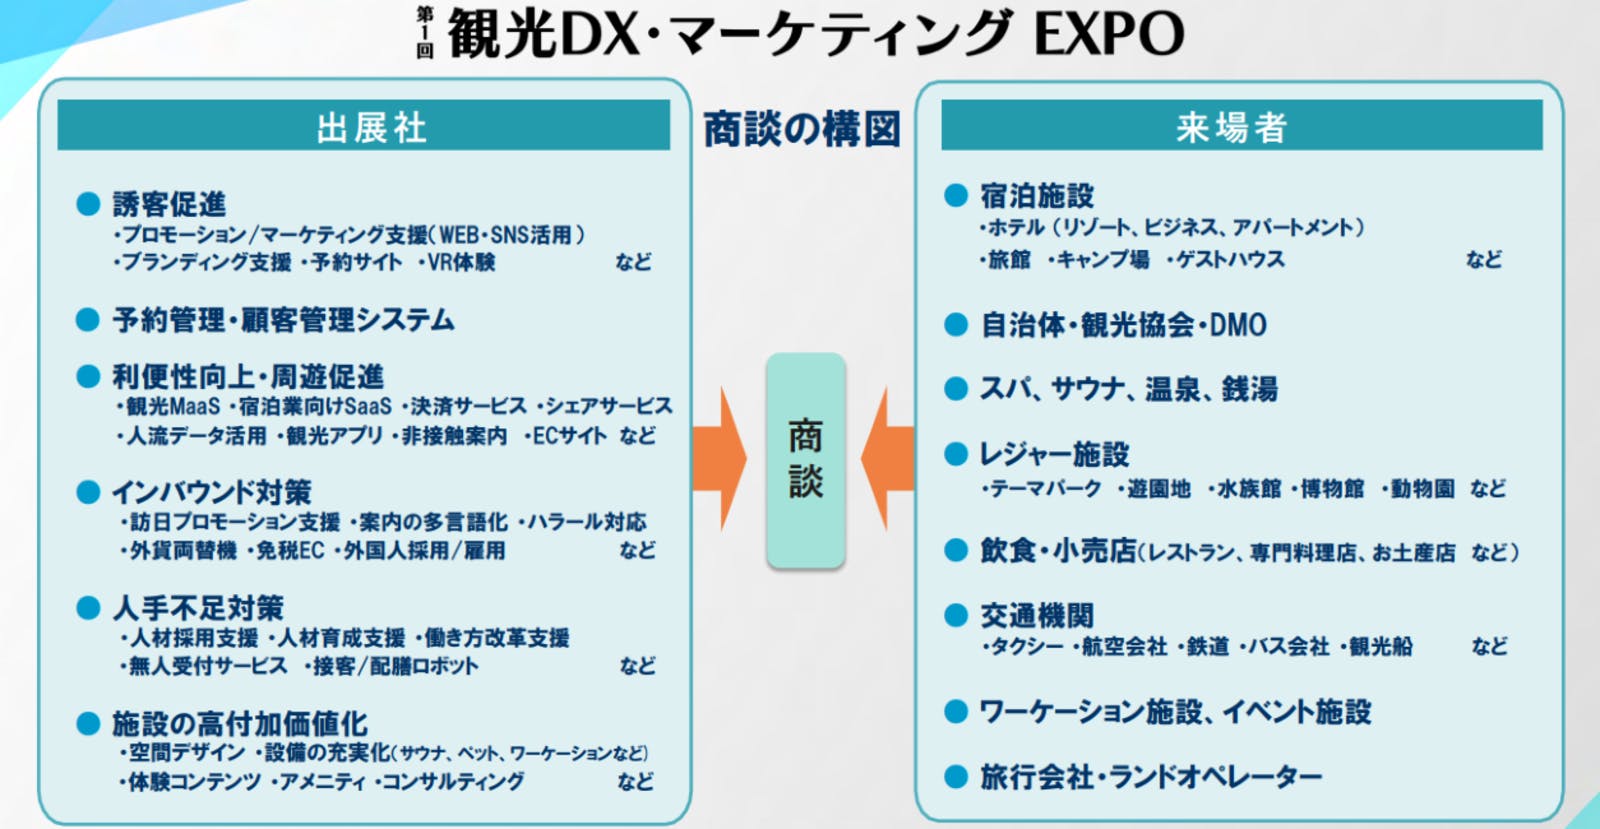 ▲「観光DX・マーケティングEXPO」商談の構図：RX Japan